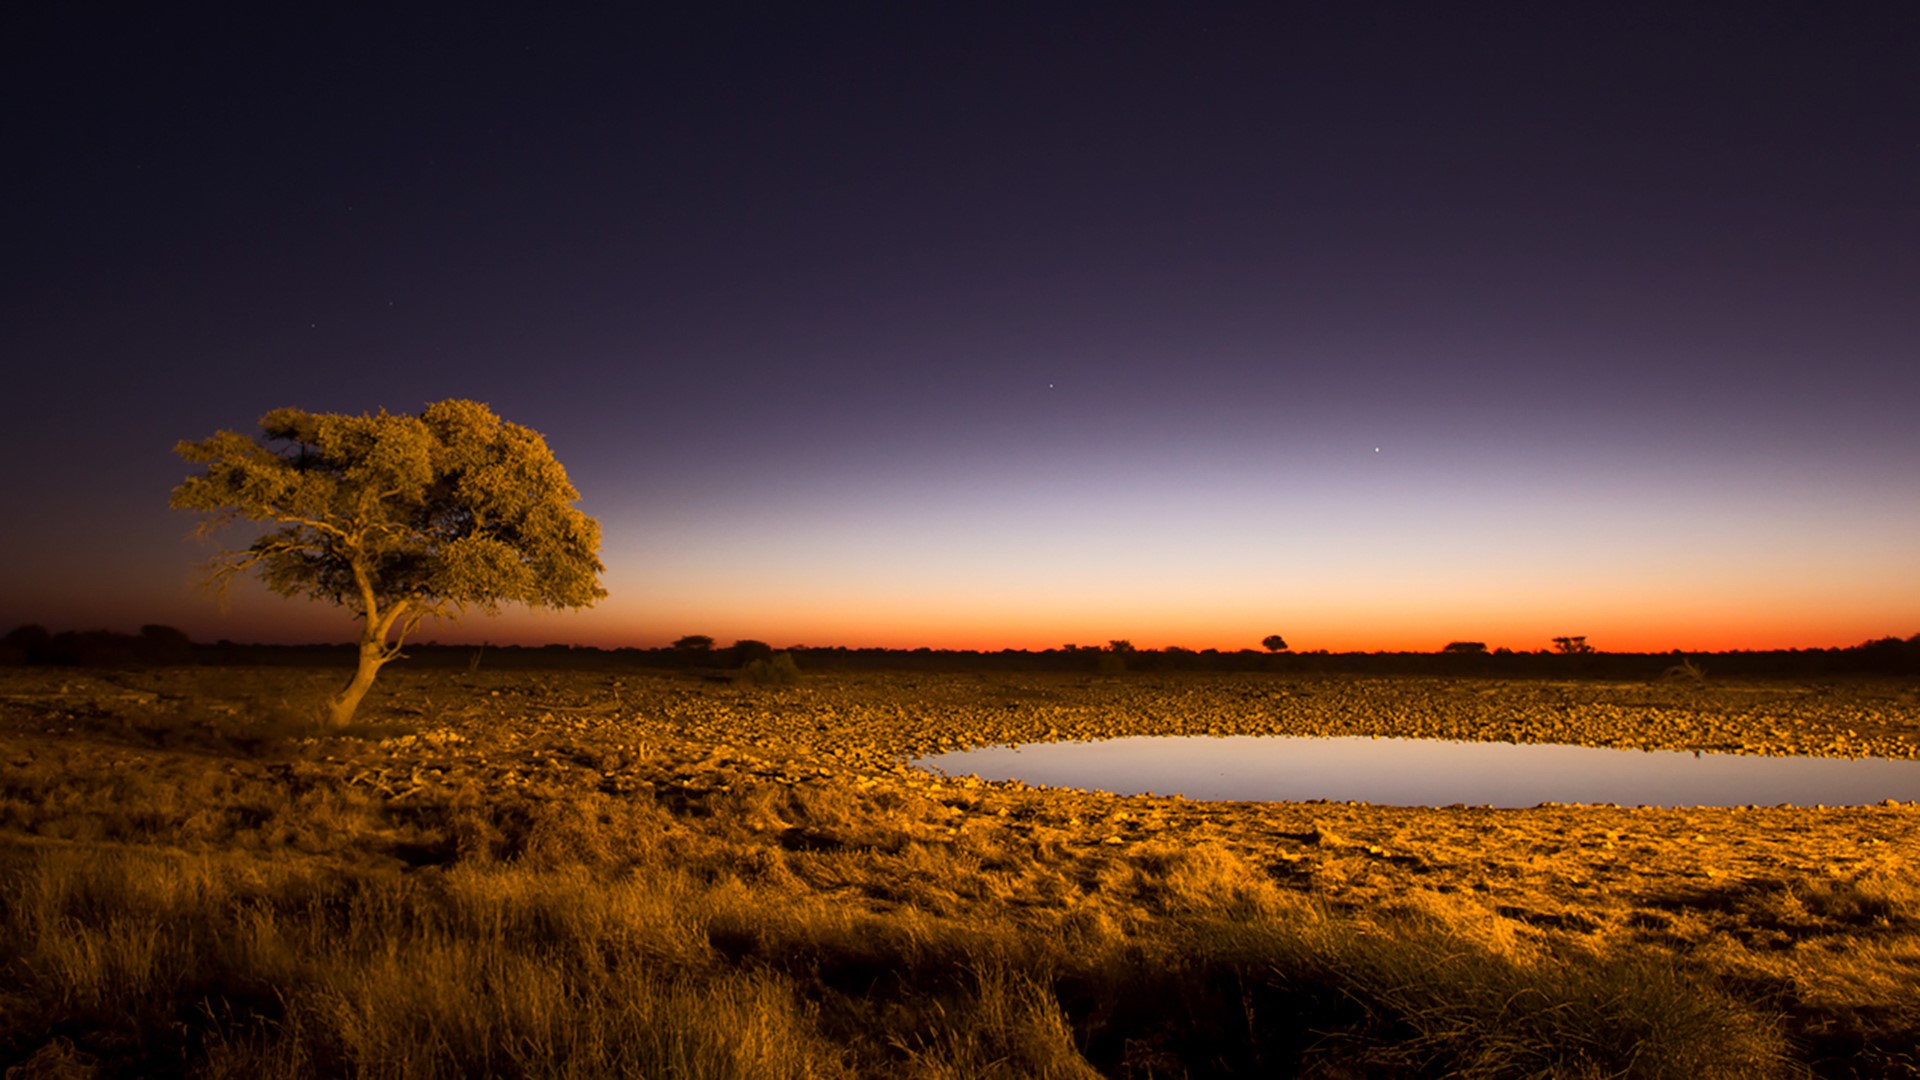 African twilight, classic landscape of lone acacia tree, Etosha